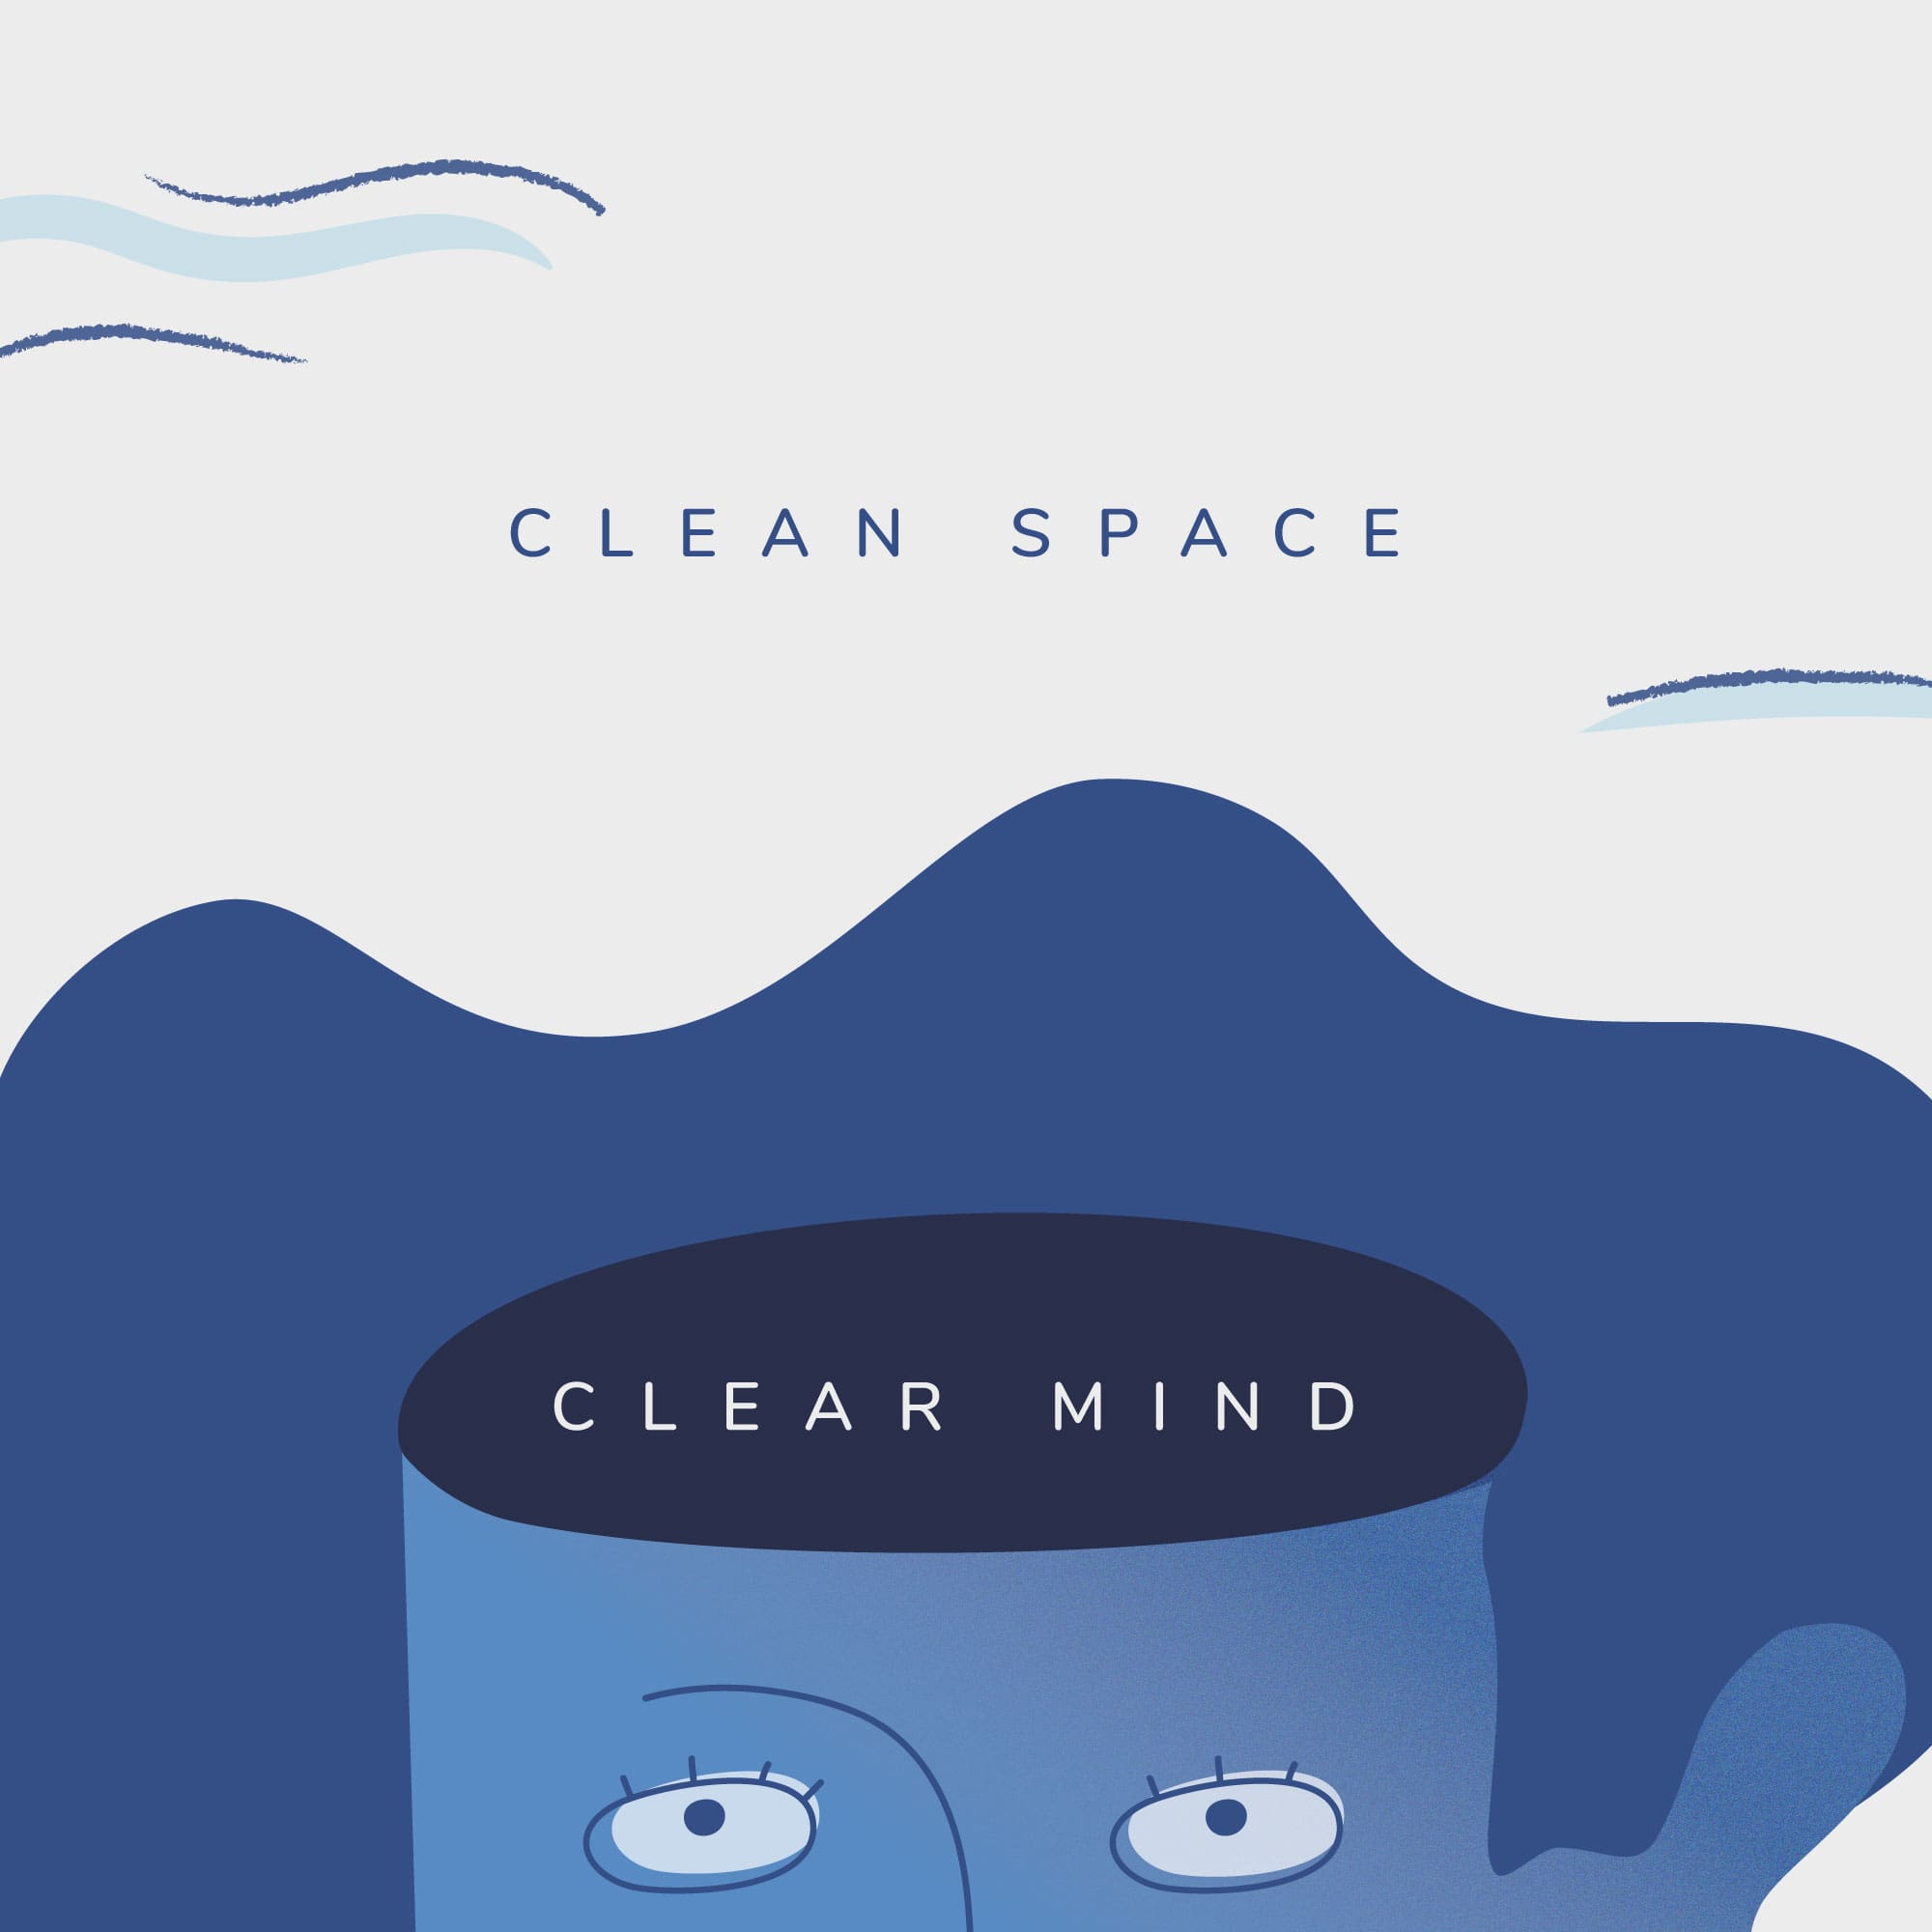 A clean space creates a clear mind.